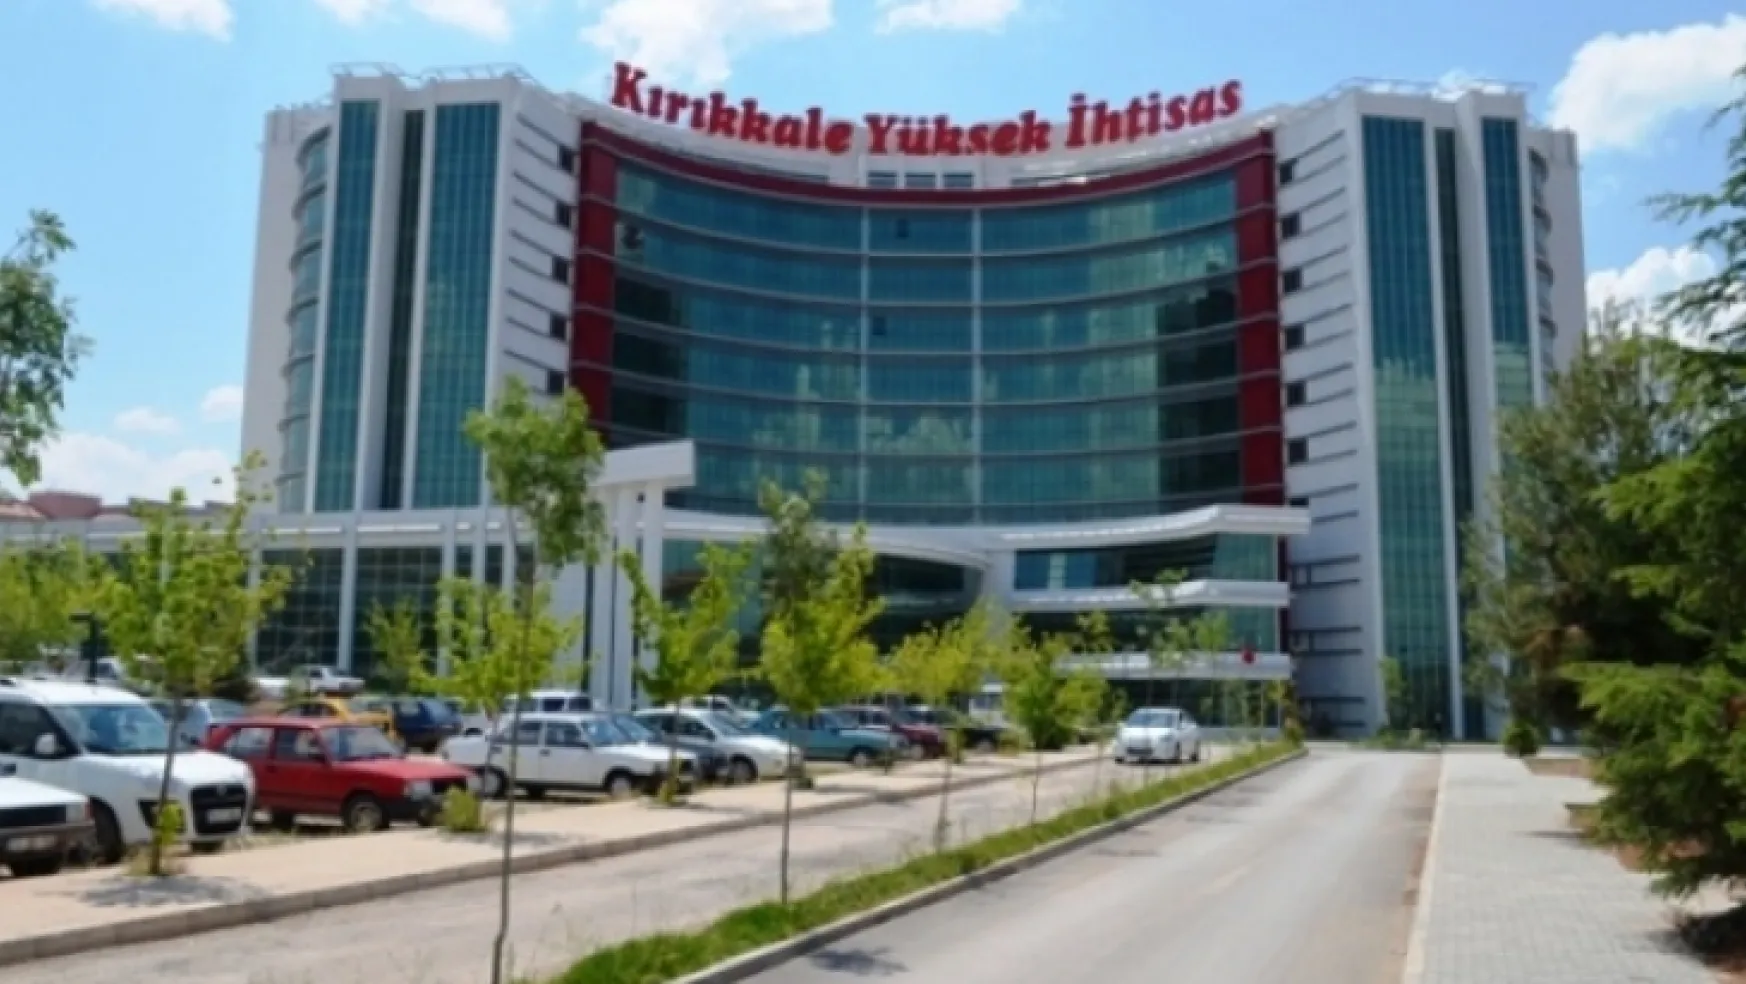 Kırıkkale Yüksek İhtisas Hastanesinden 21 doktor içeri alındı